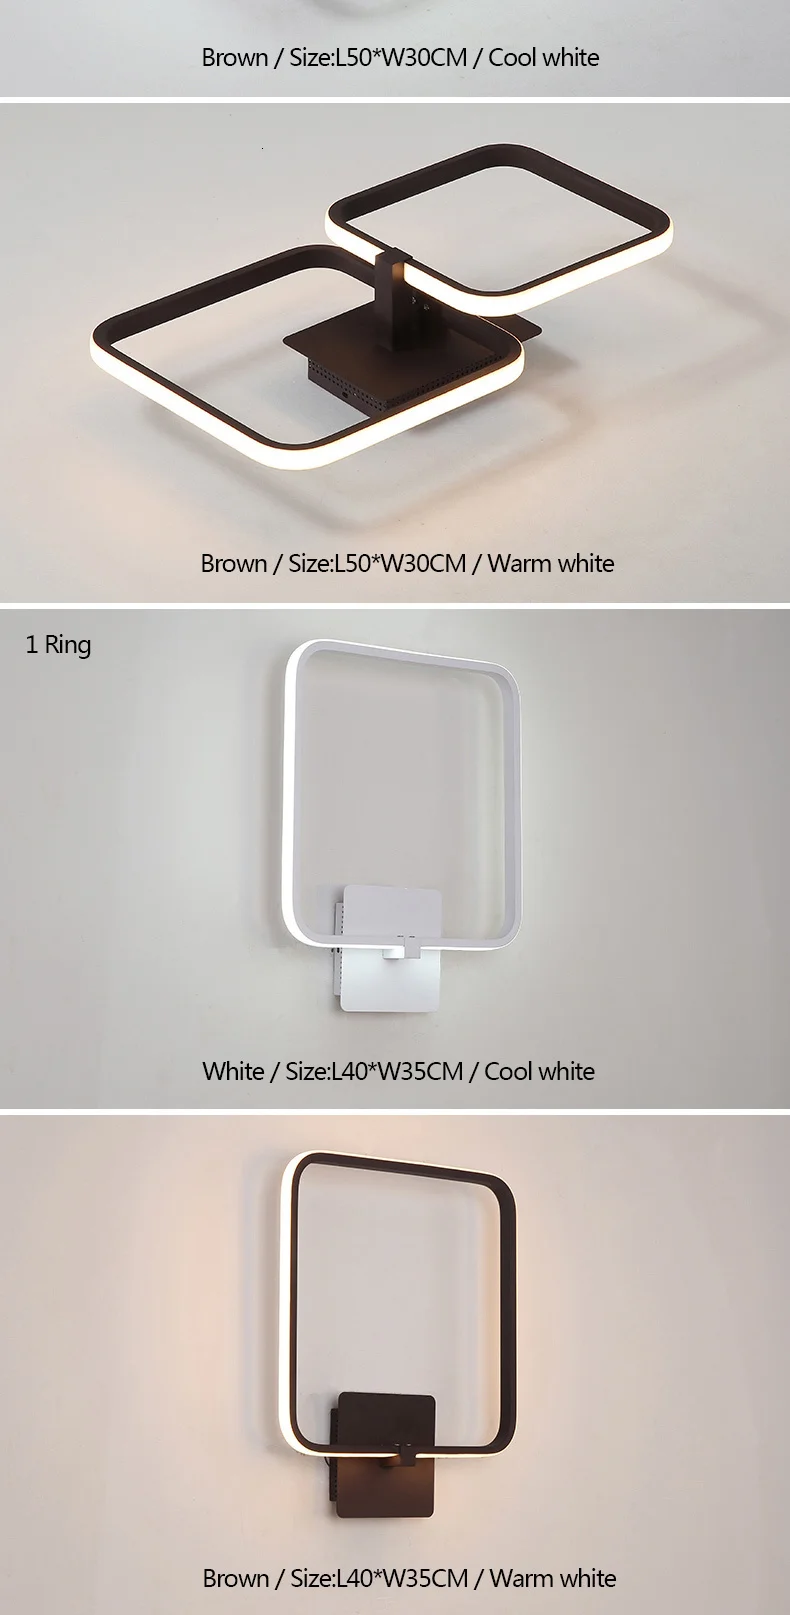 Новые белые/коричневые Современные светодиодные люстры потолочные для гостиной ledlamp столовая спальня кухня современная люстра освещение